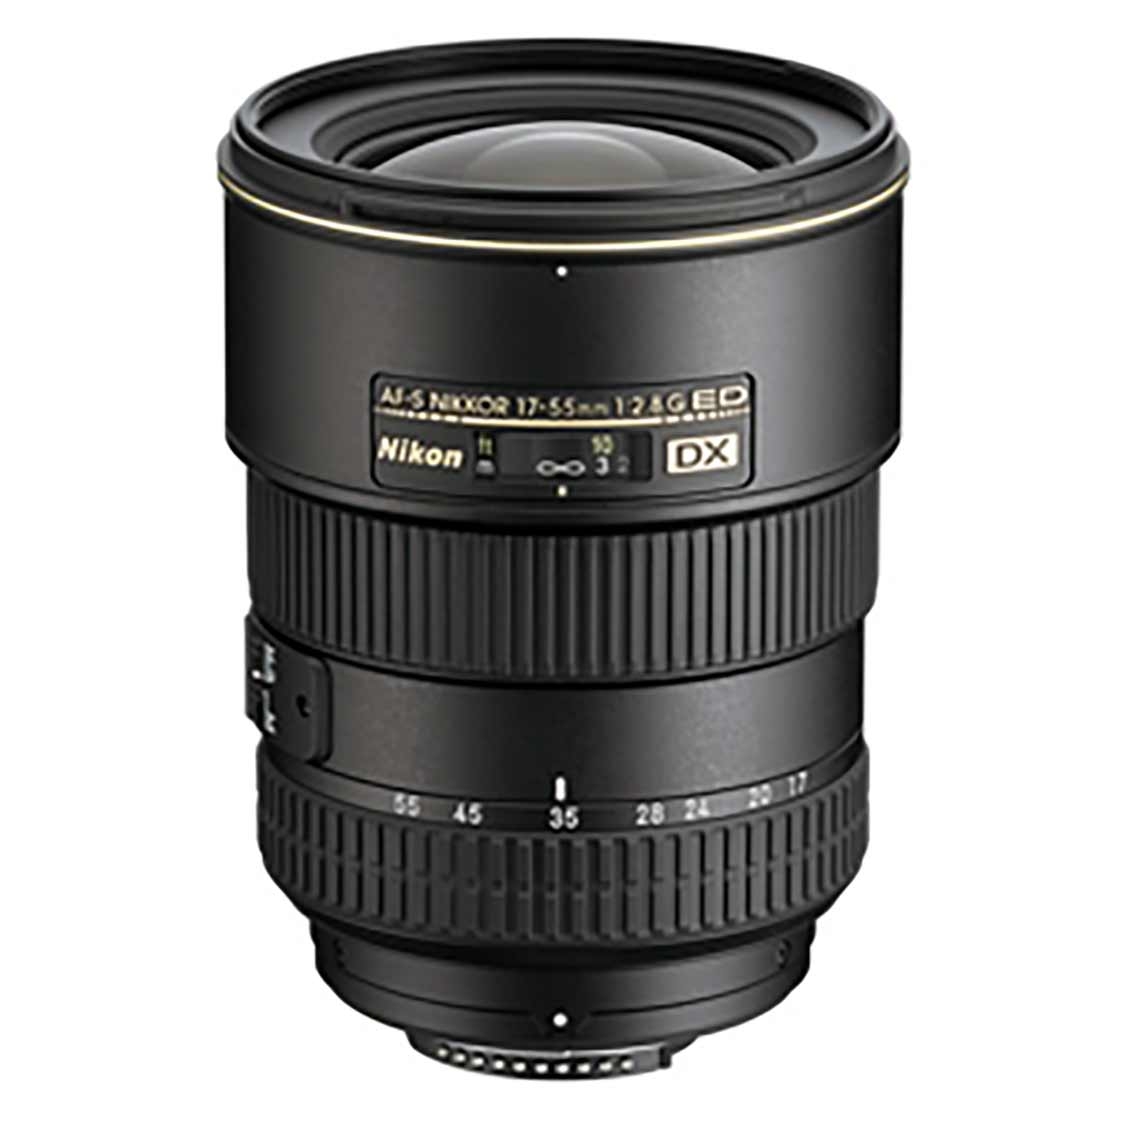 Nikon AF-S DX 17-55mm F2.8G Lens